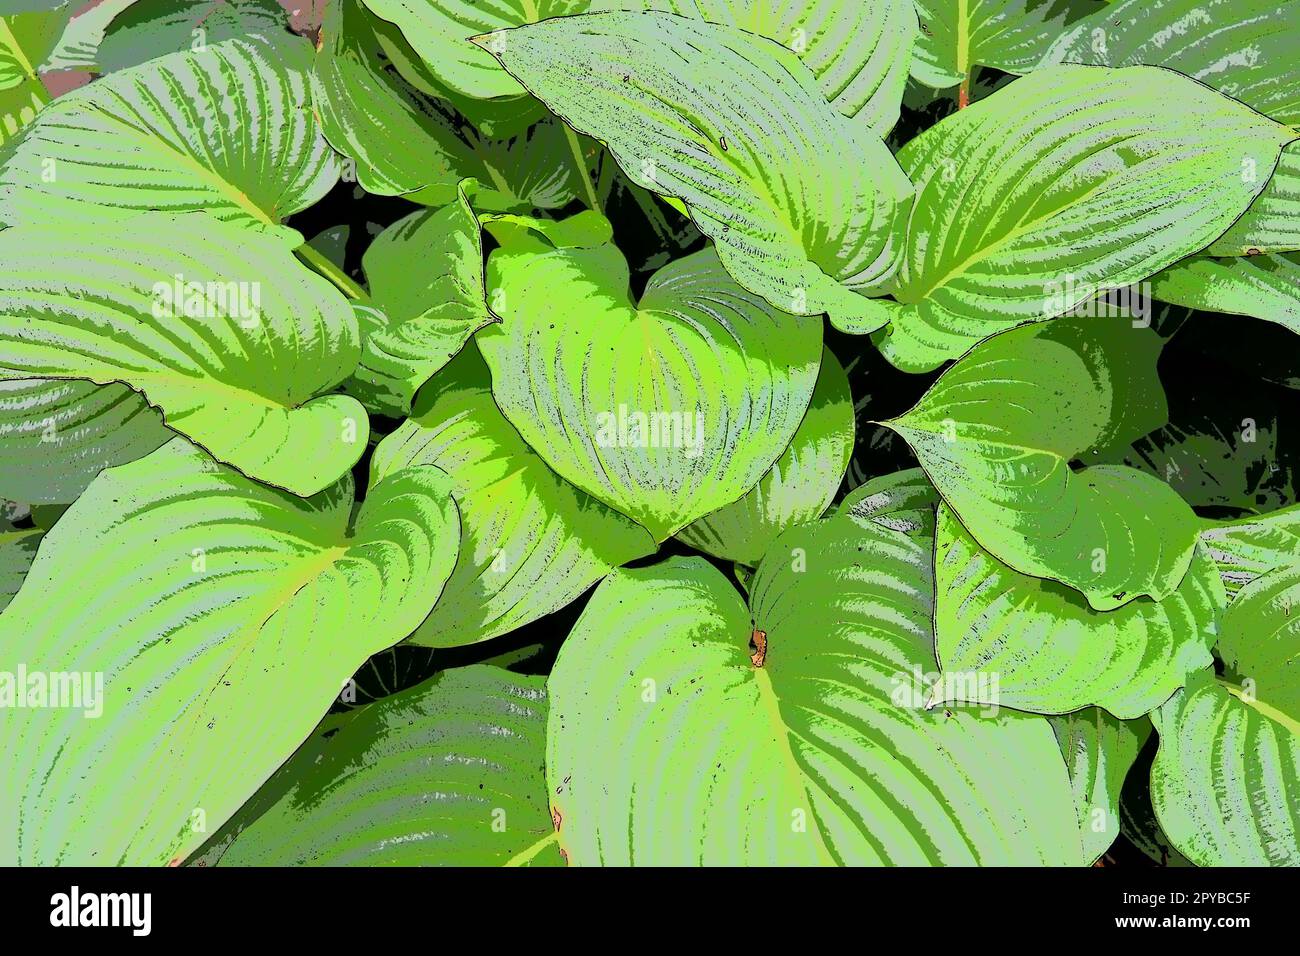 Hosta ist eine Gattung mehrjähriger krautiger Pflanzen der Familie Asparagus, die früher zur Familie Liliaceae gehörte. Große Hosta-Blätter. Blumenzucht und Landschaftsgestaltung. Einfarbiger grüner Ton Stockfoto